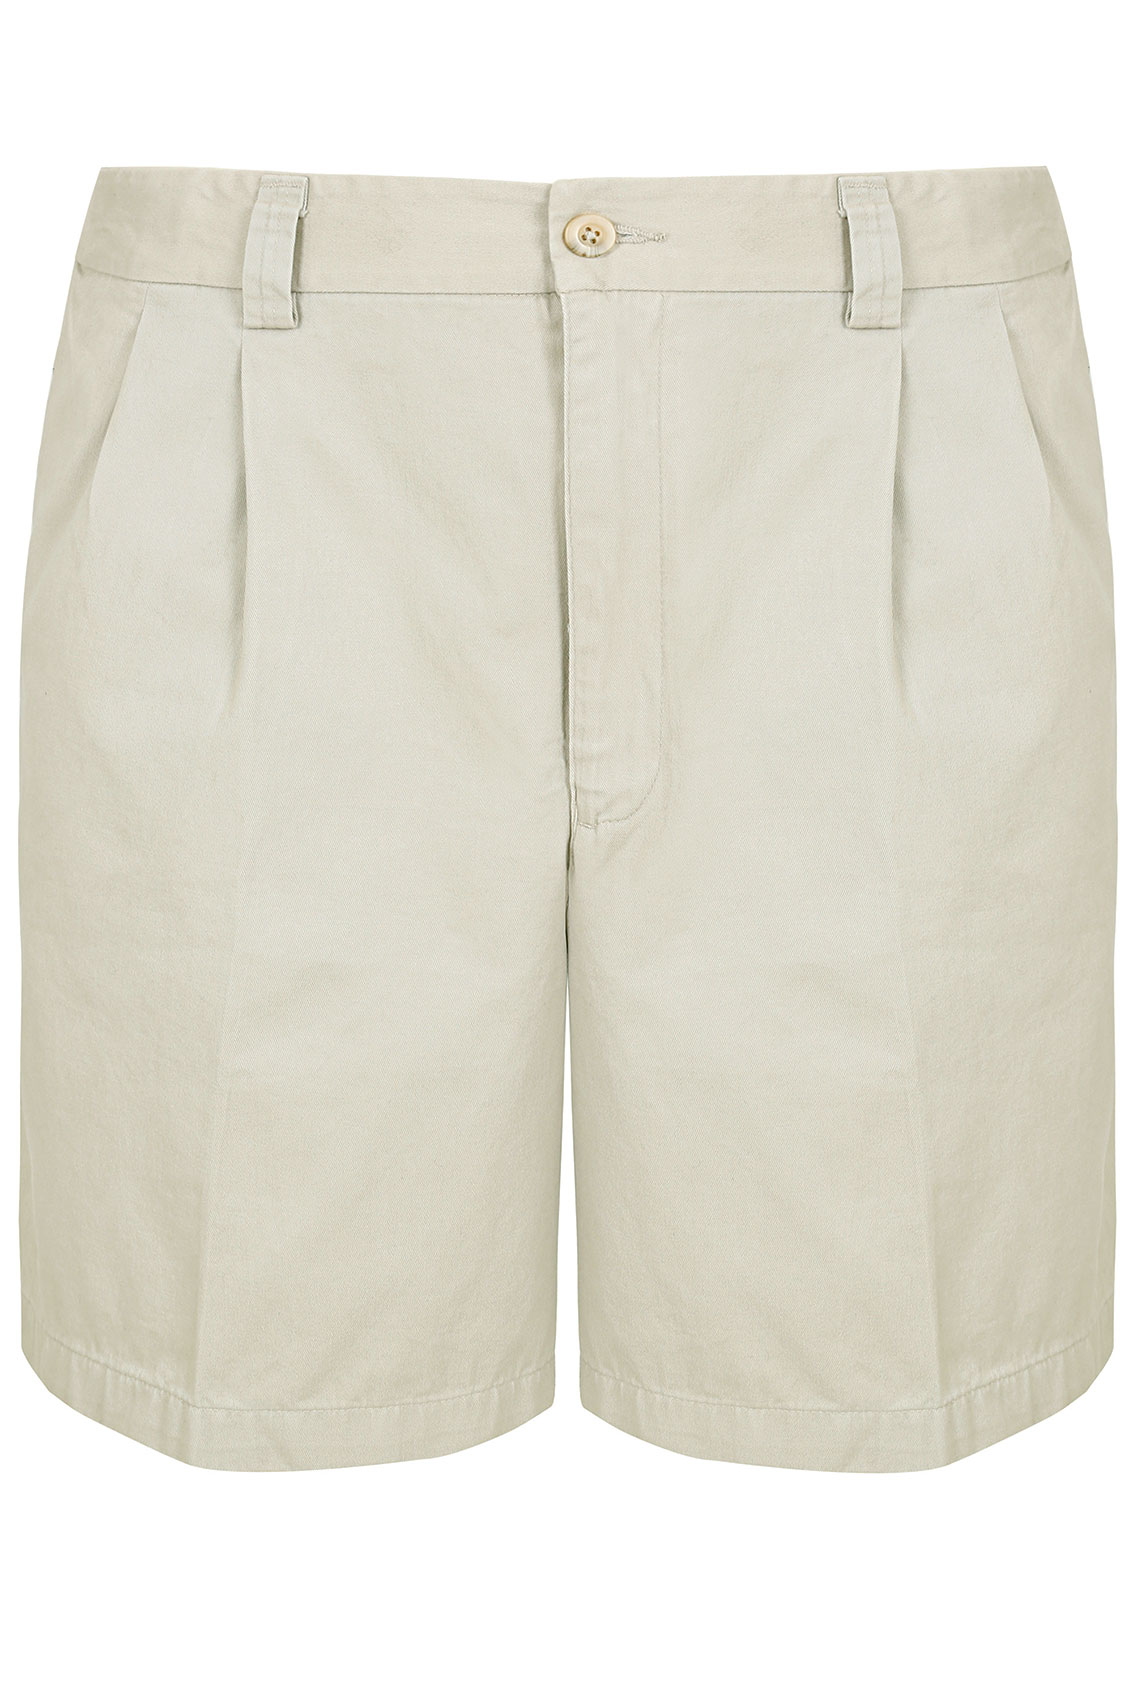 Cream Chino Shorts With Elasticated Waist Insert